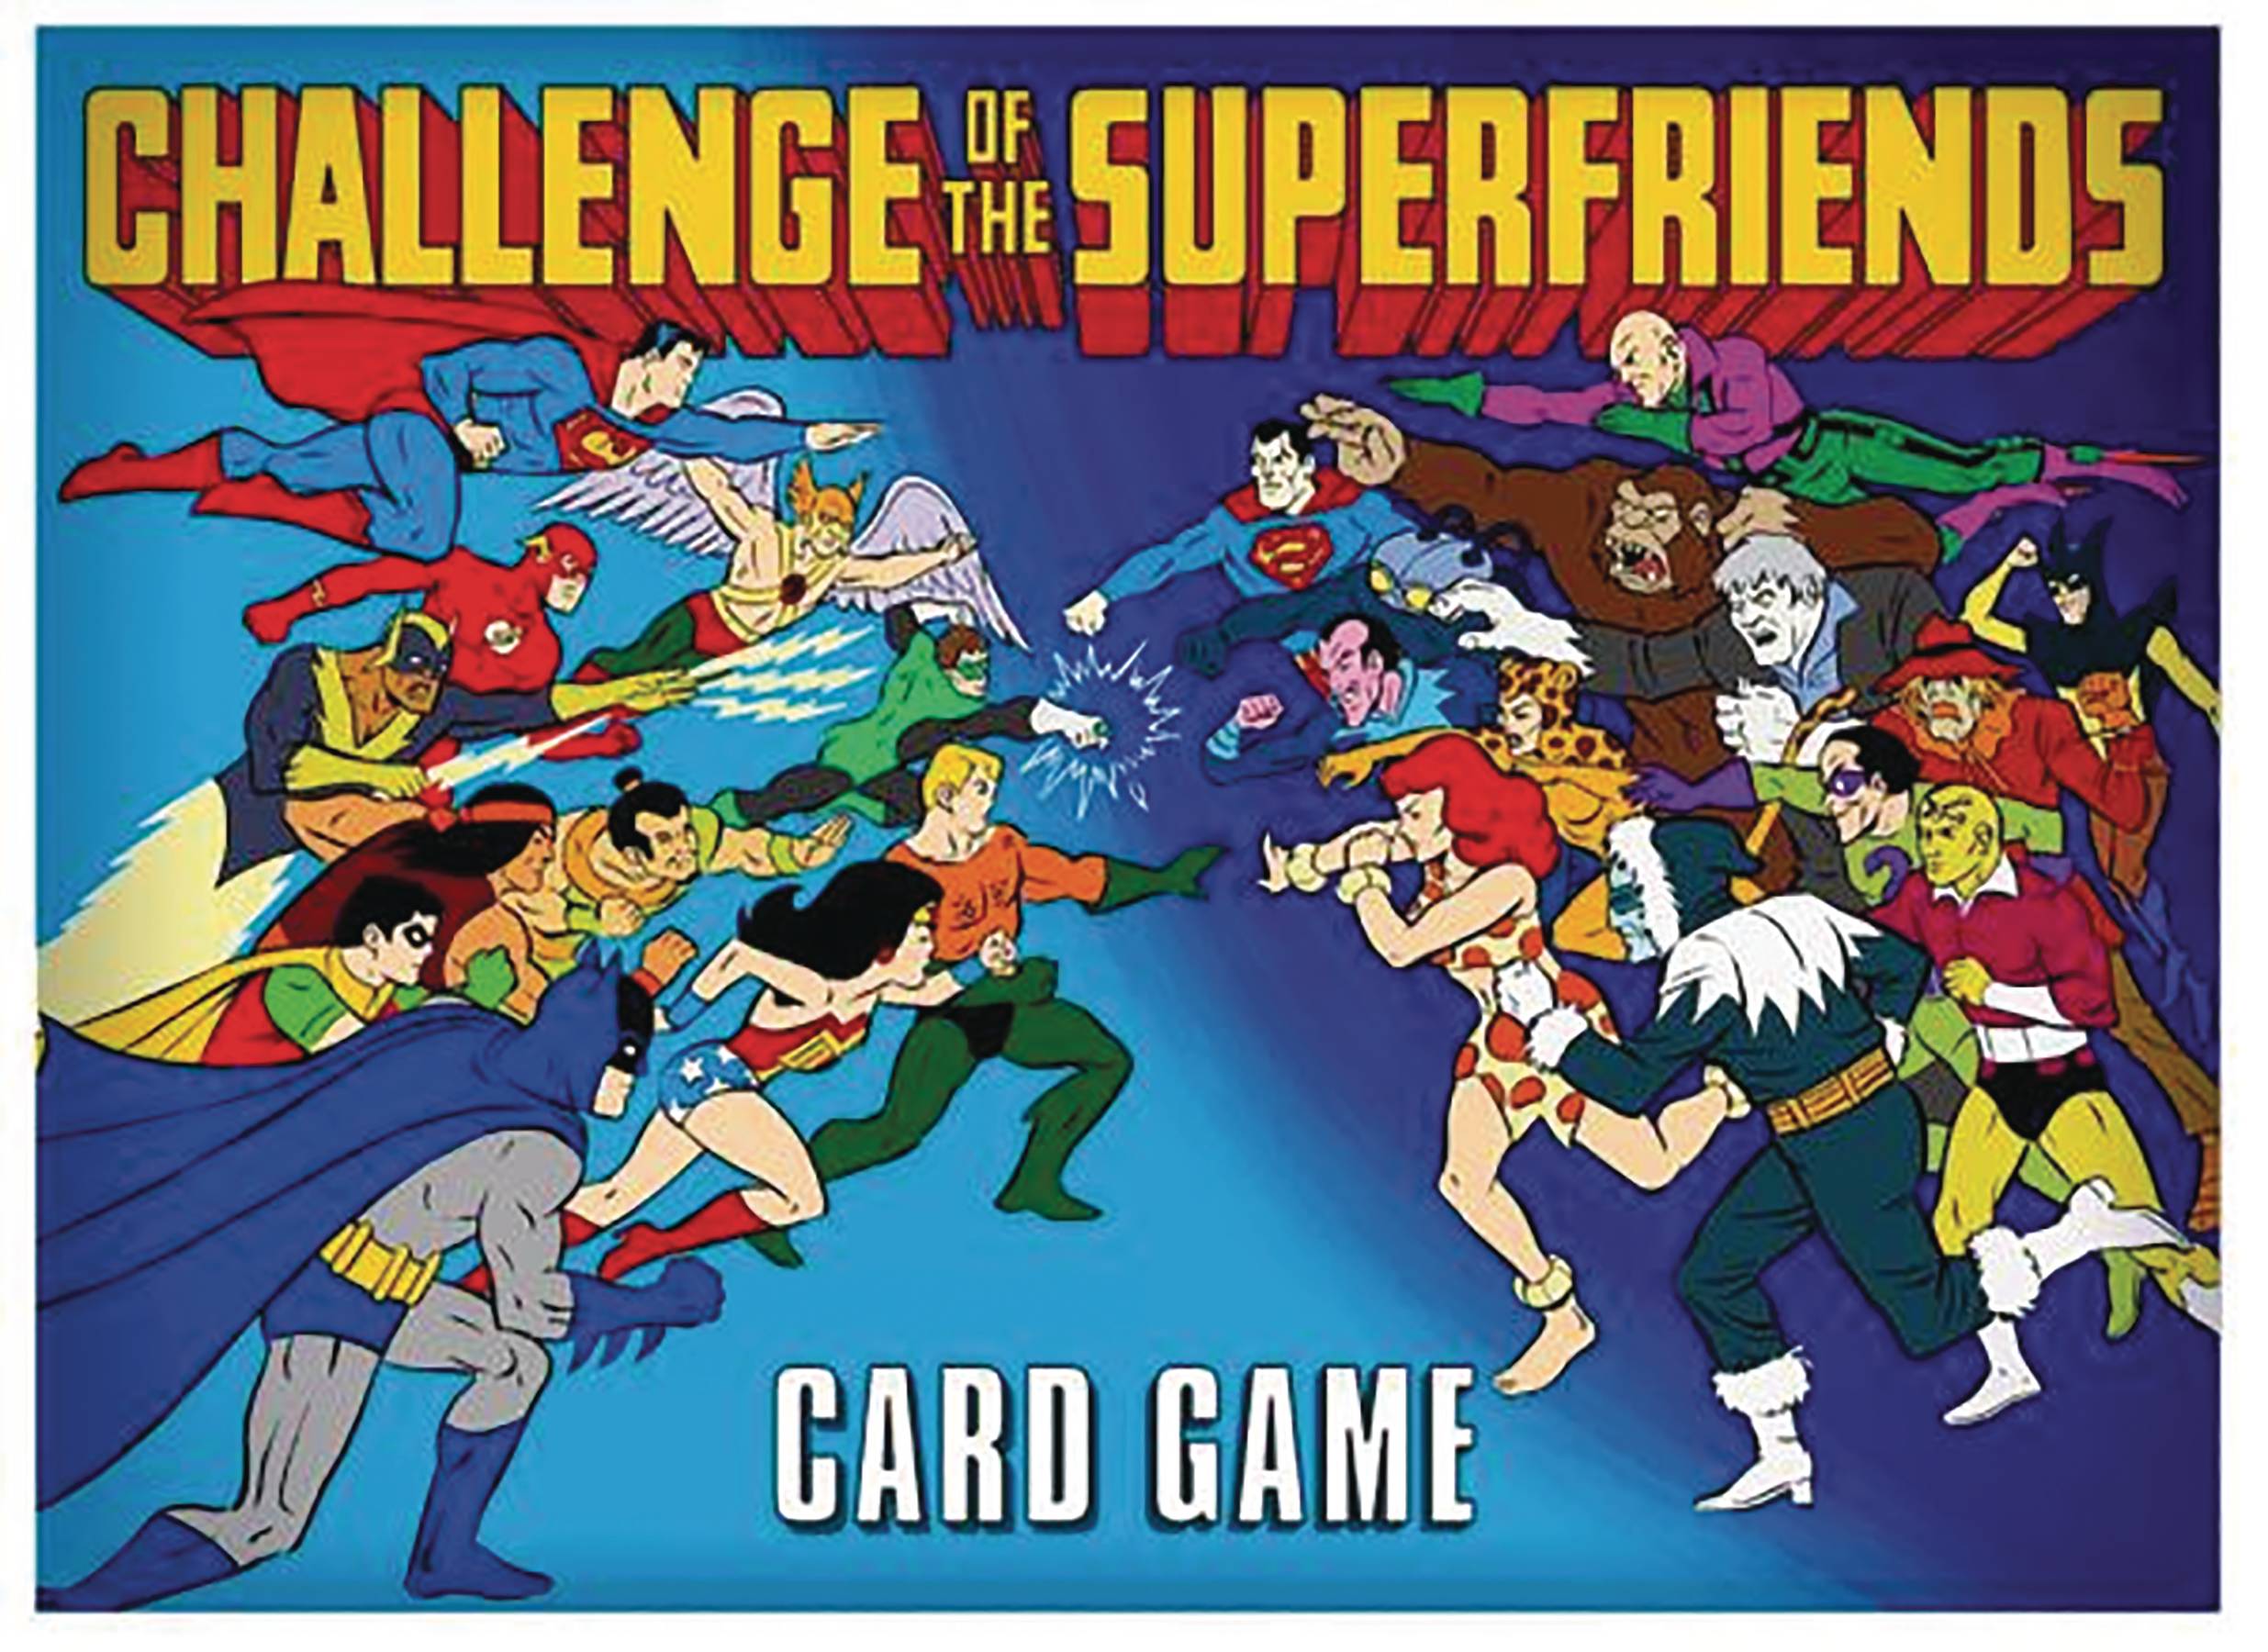 Card Game Cartoon Shows